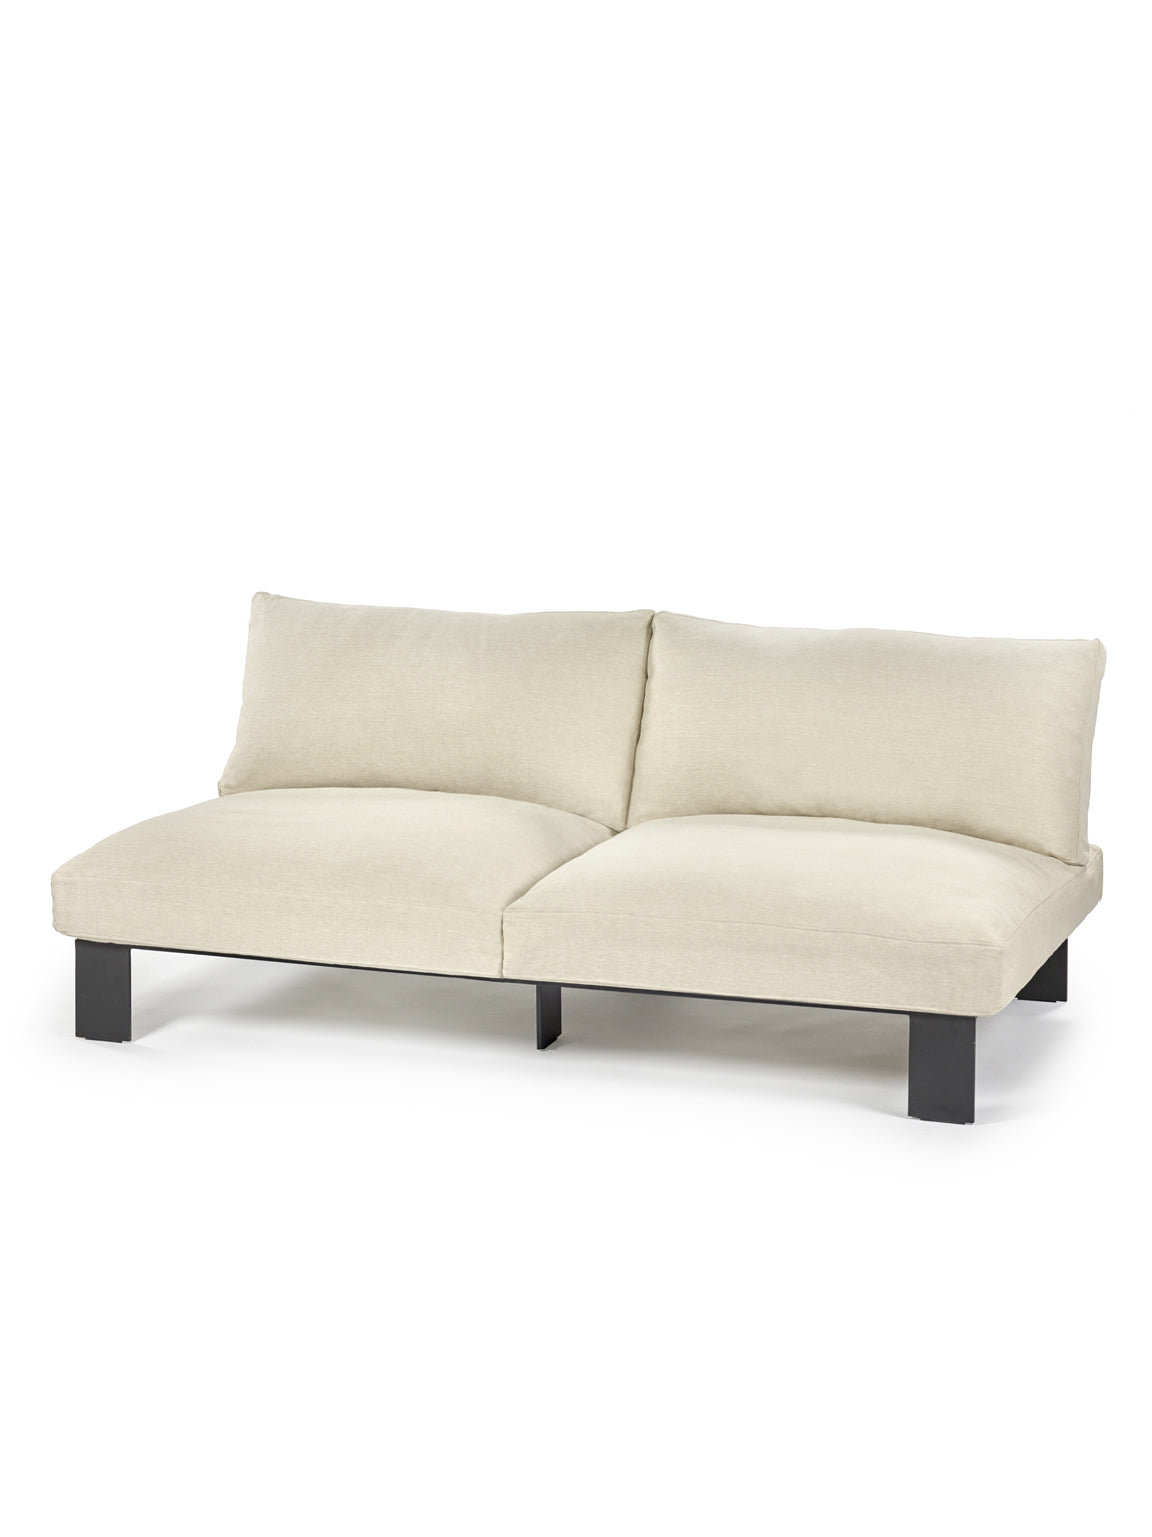 Mombaers Outdoor Sofa - Beige Outdoor Lounge Furniture Serax